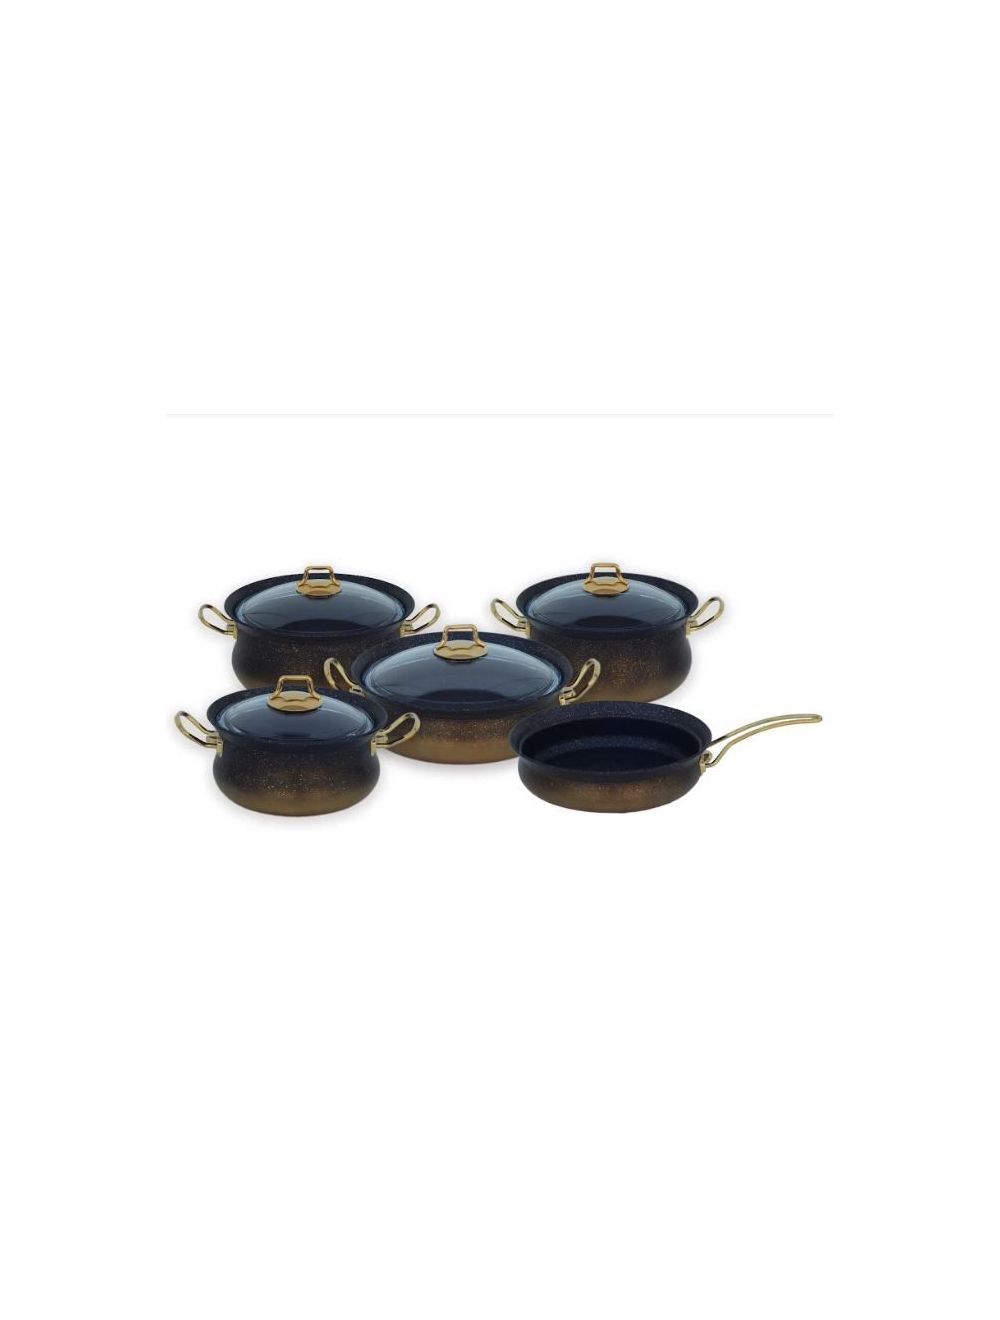 OMS 9 Pcs Black Gold Induction Safe Granitec Cookware Set-3045 Gold